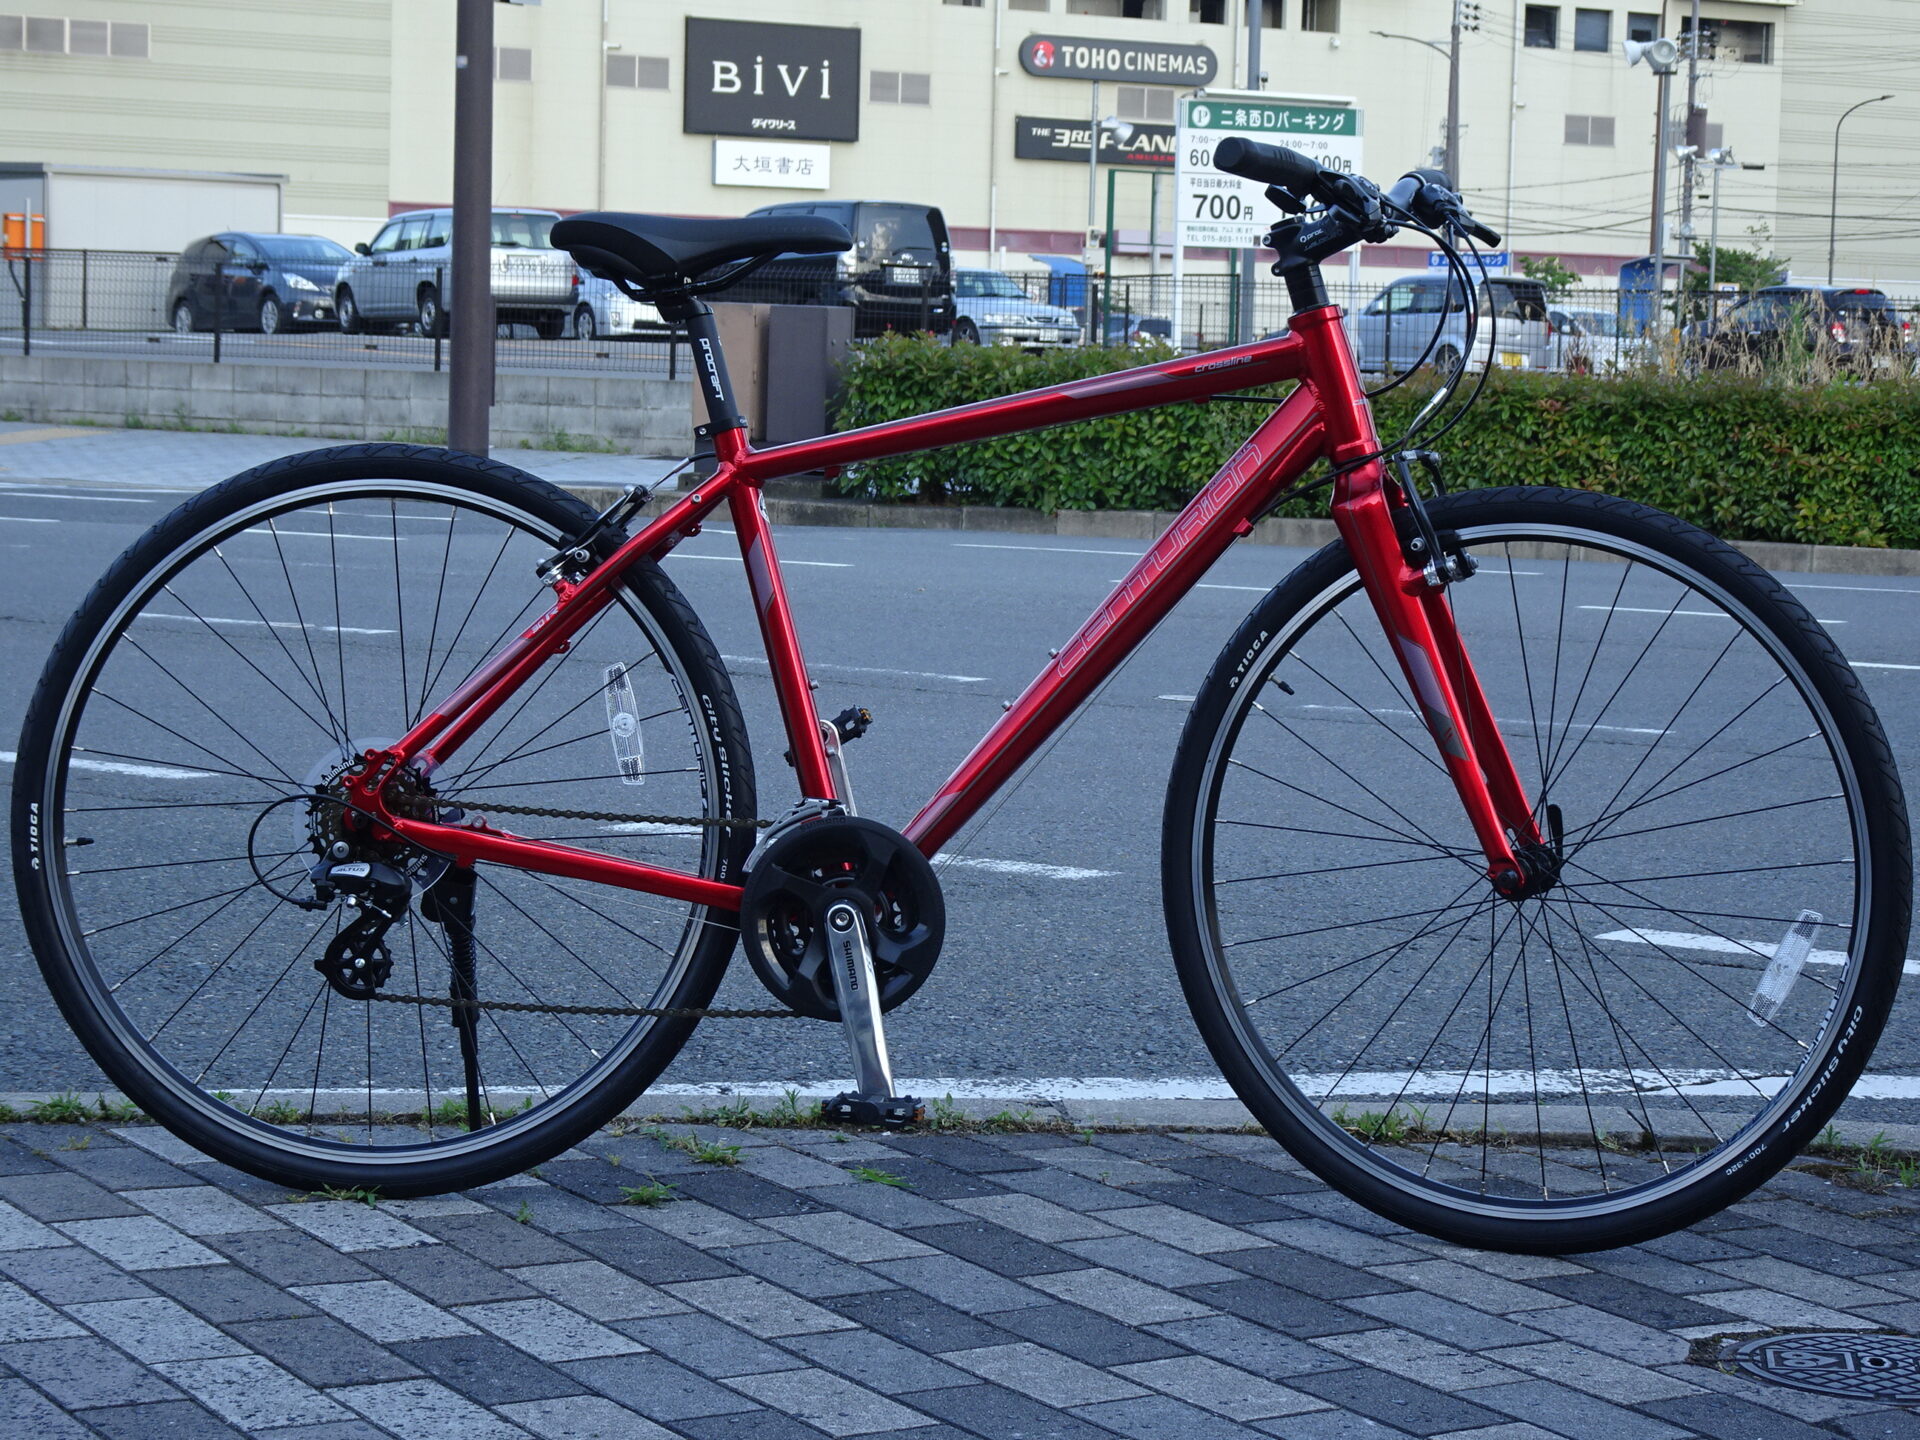 お買い得情報!CENTURION CROSS LINE 30R | 京都の中古自転車・新車販売 